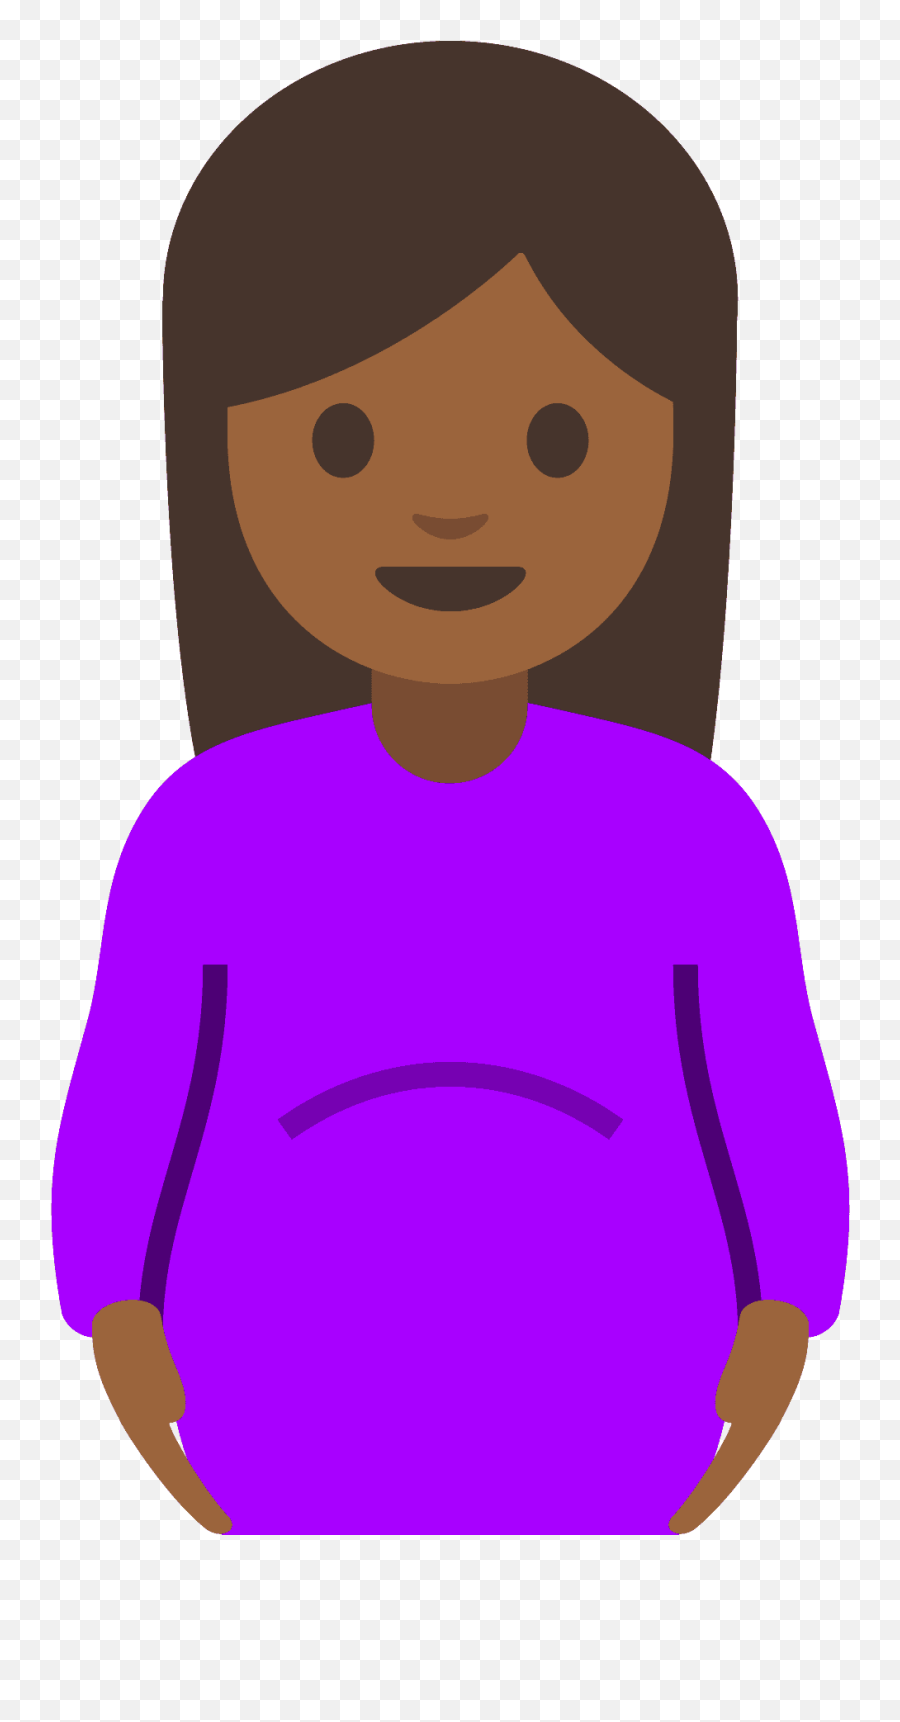 Pregnant Woman Emoji Clipart Free Download Transparent - Embarazada Emoji,Pregnant Clipart